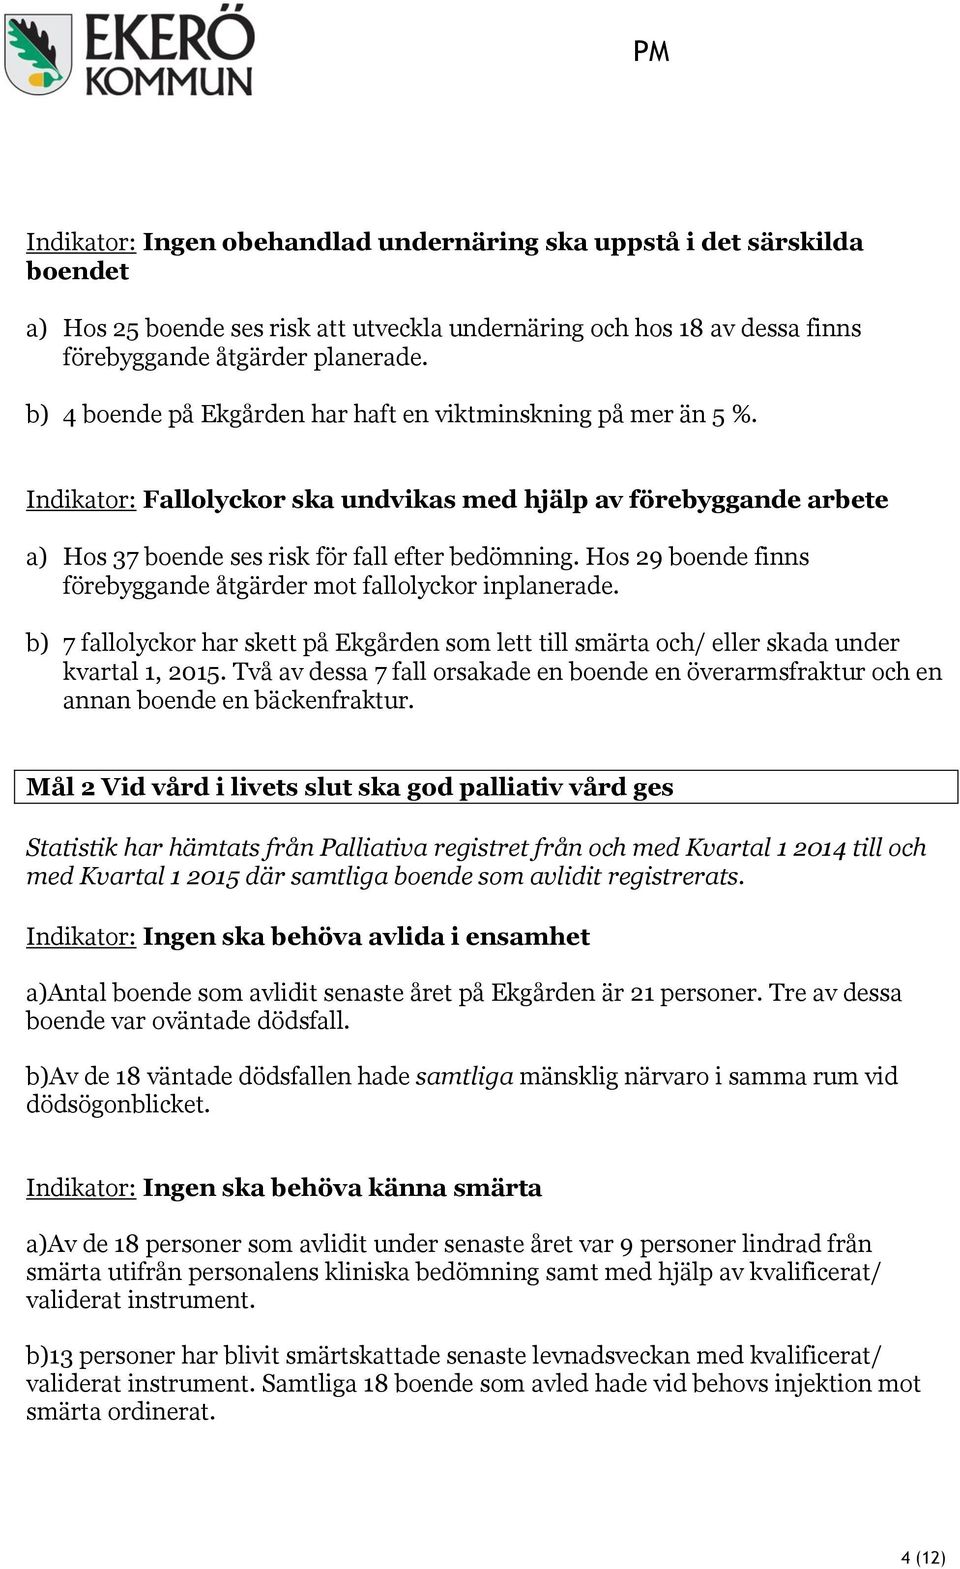 Hos 29 boende finns förebyggande åtgärder mot fallolyckor inplanerade. b) 7 fallolyckor har skett på Ekgården som lett till smärta och/ eller skada under kvartal 1, 2015.